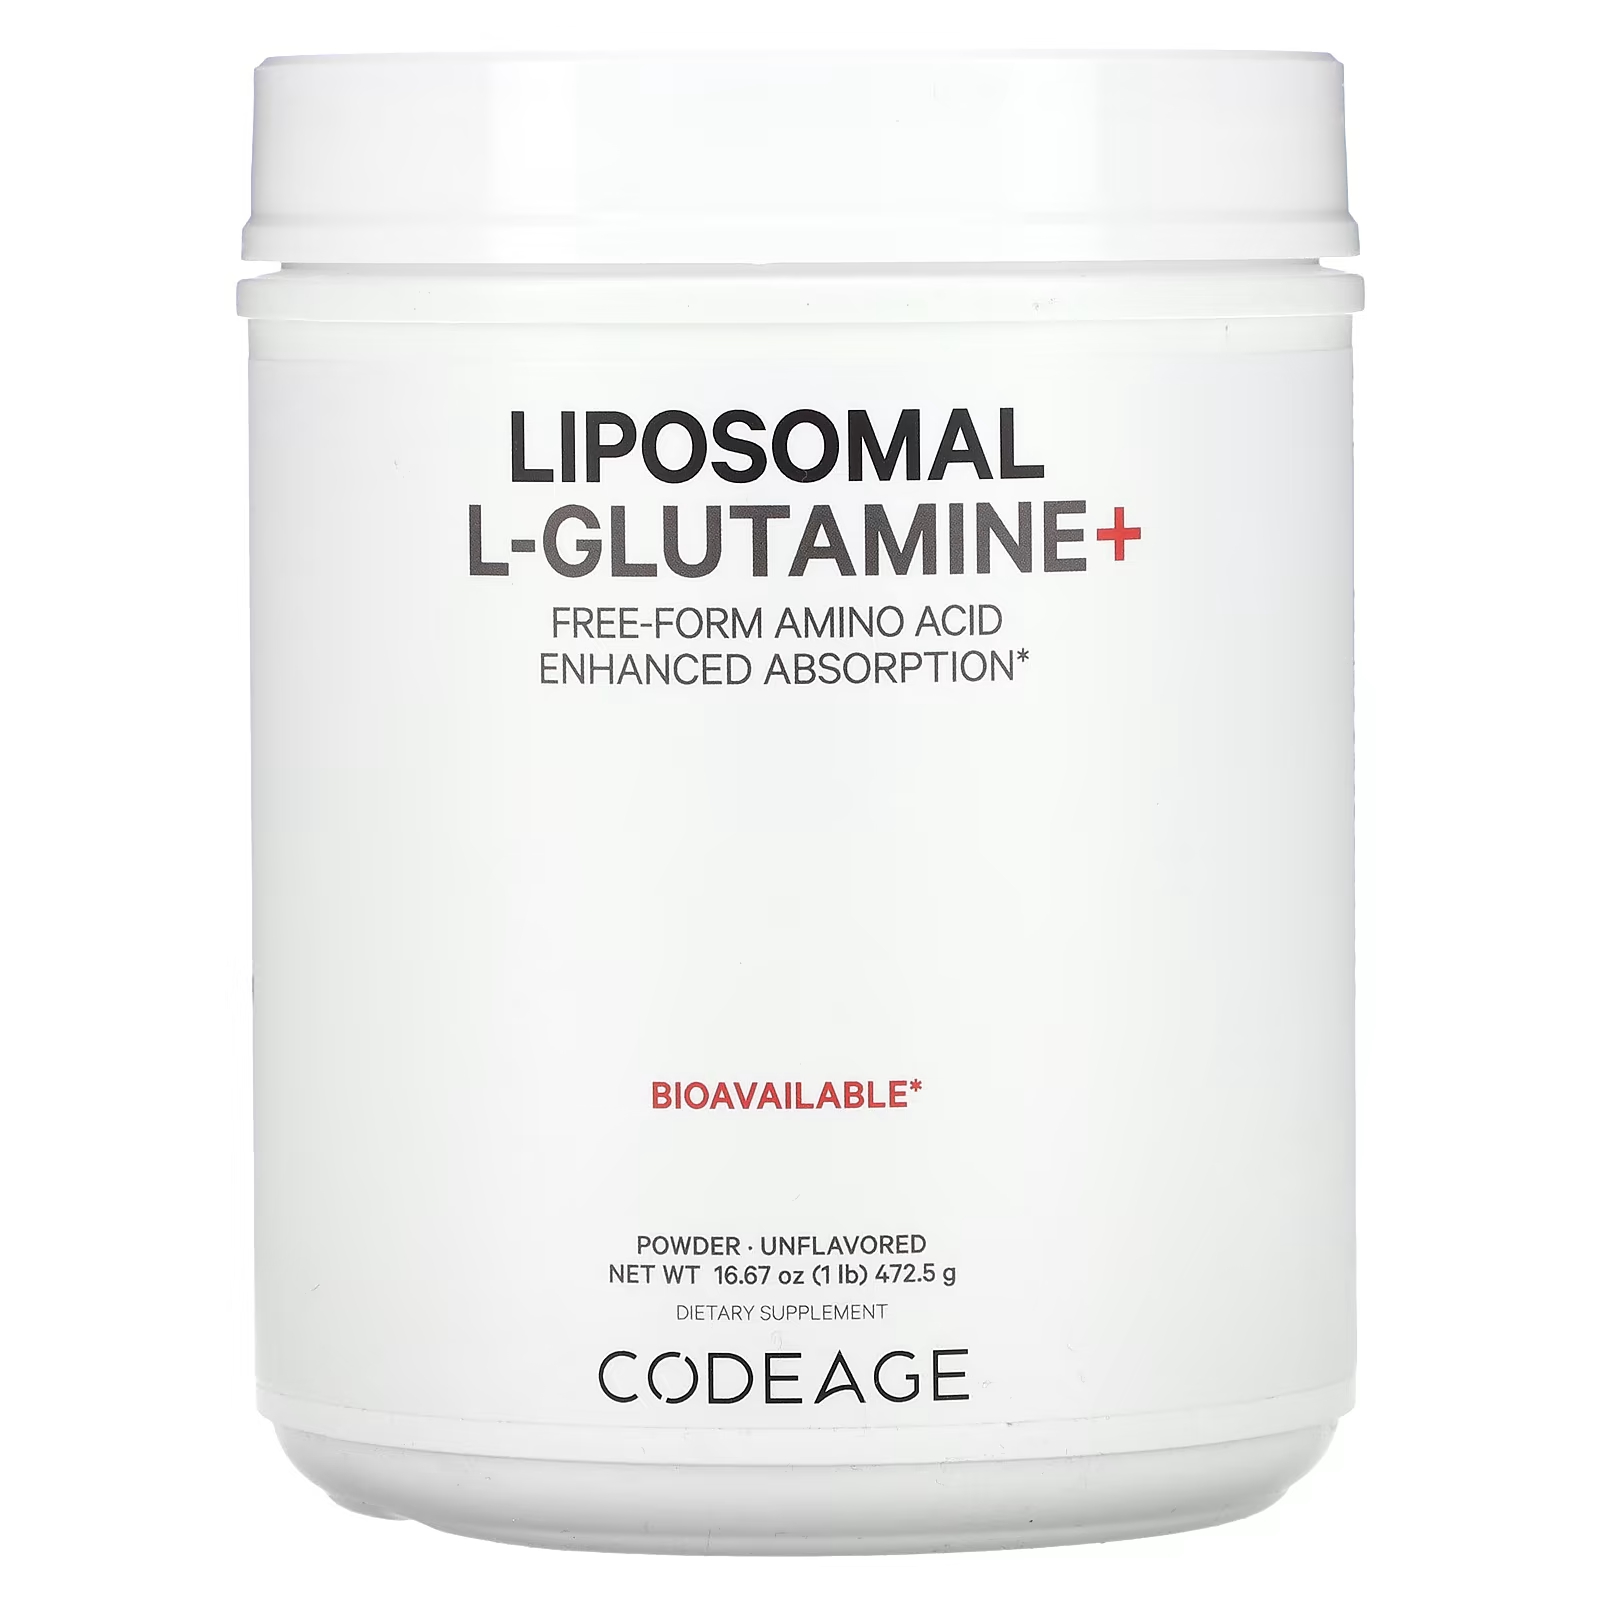 Codeage Липосомальный L-глутамин+ в виде порошка, аминокислоты в свободной форме, улучшенная абсорбция, без вкусовых добавок, 1 фунт (472,5 г) codeage липосомальный моногидрат креатина без добавок 455 г 1 фунт